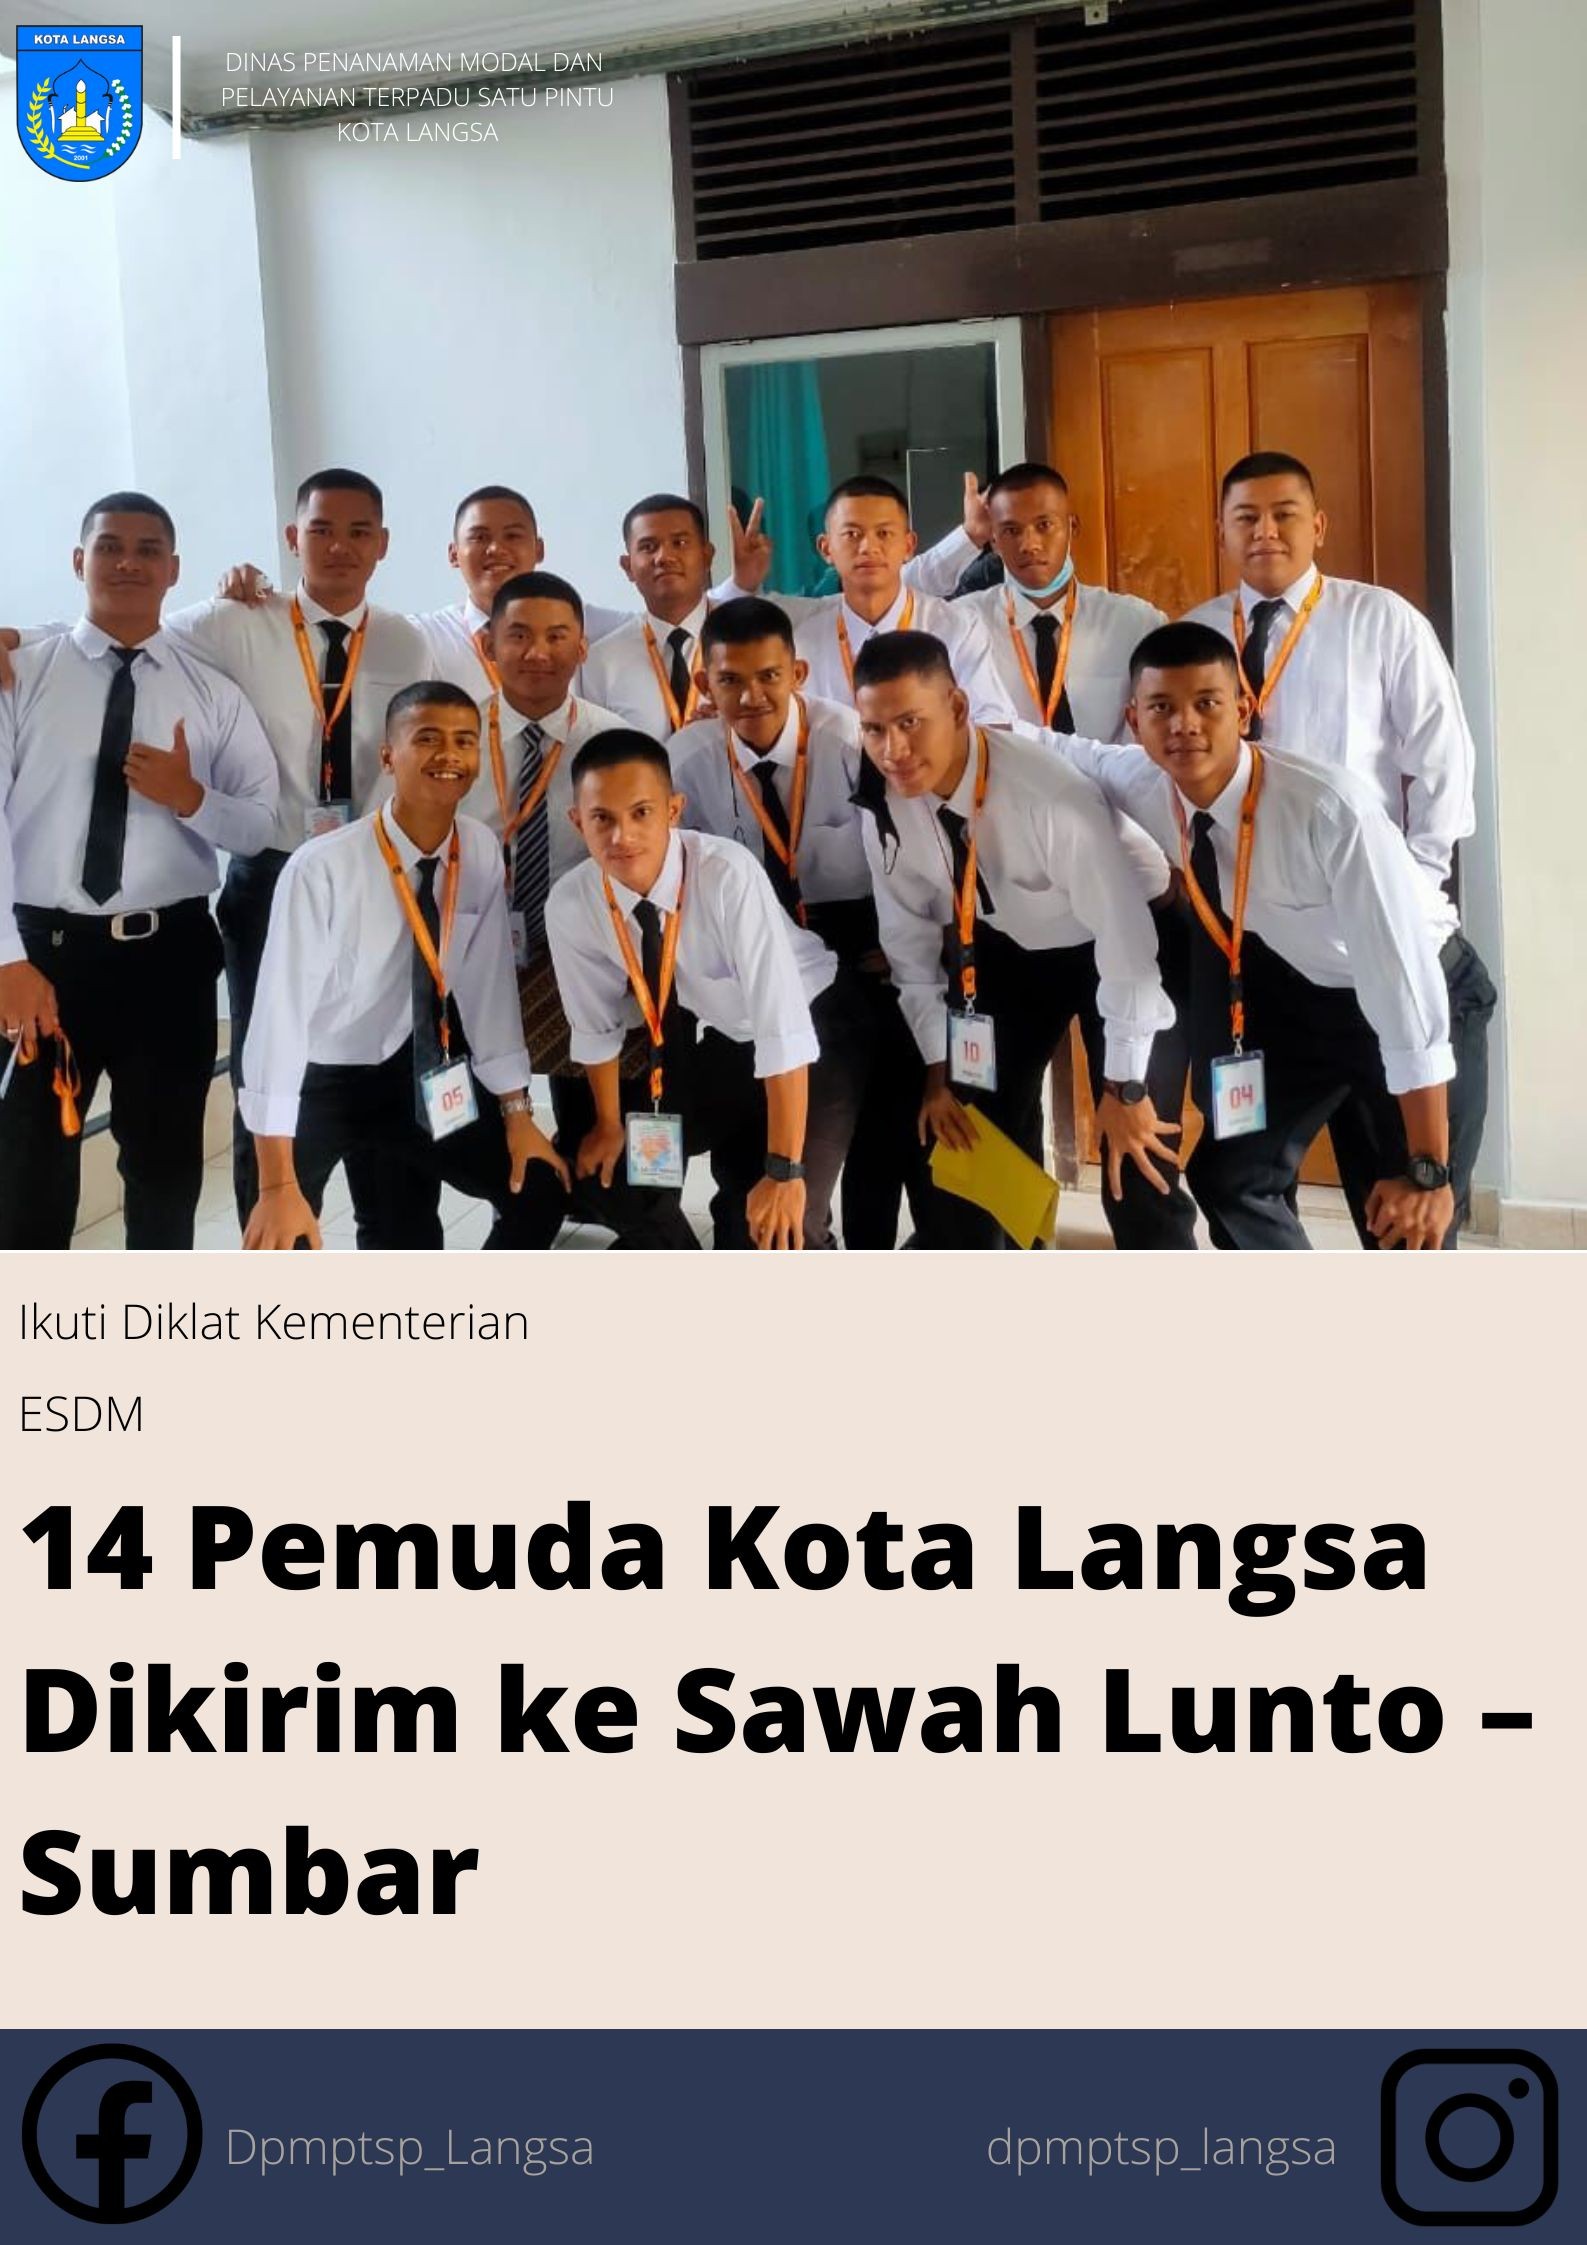 Ikuti Diklat Kementerian ESDM, 14 Pemuda Kota Langsa Dikirim ke Sawah Lunto – Sumbar